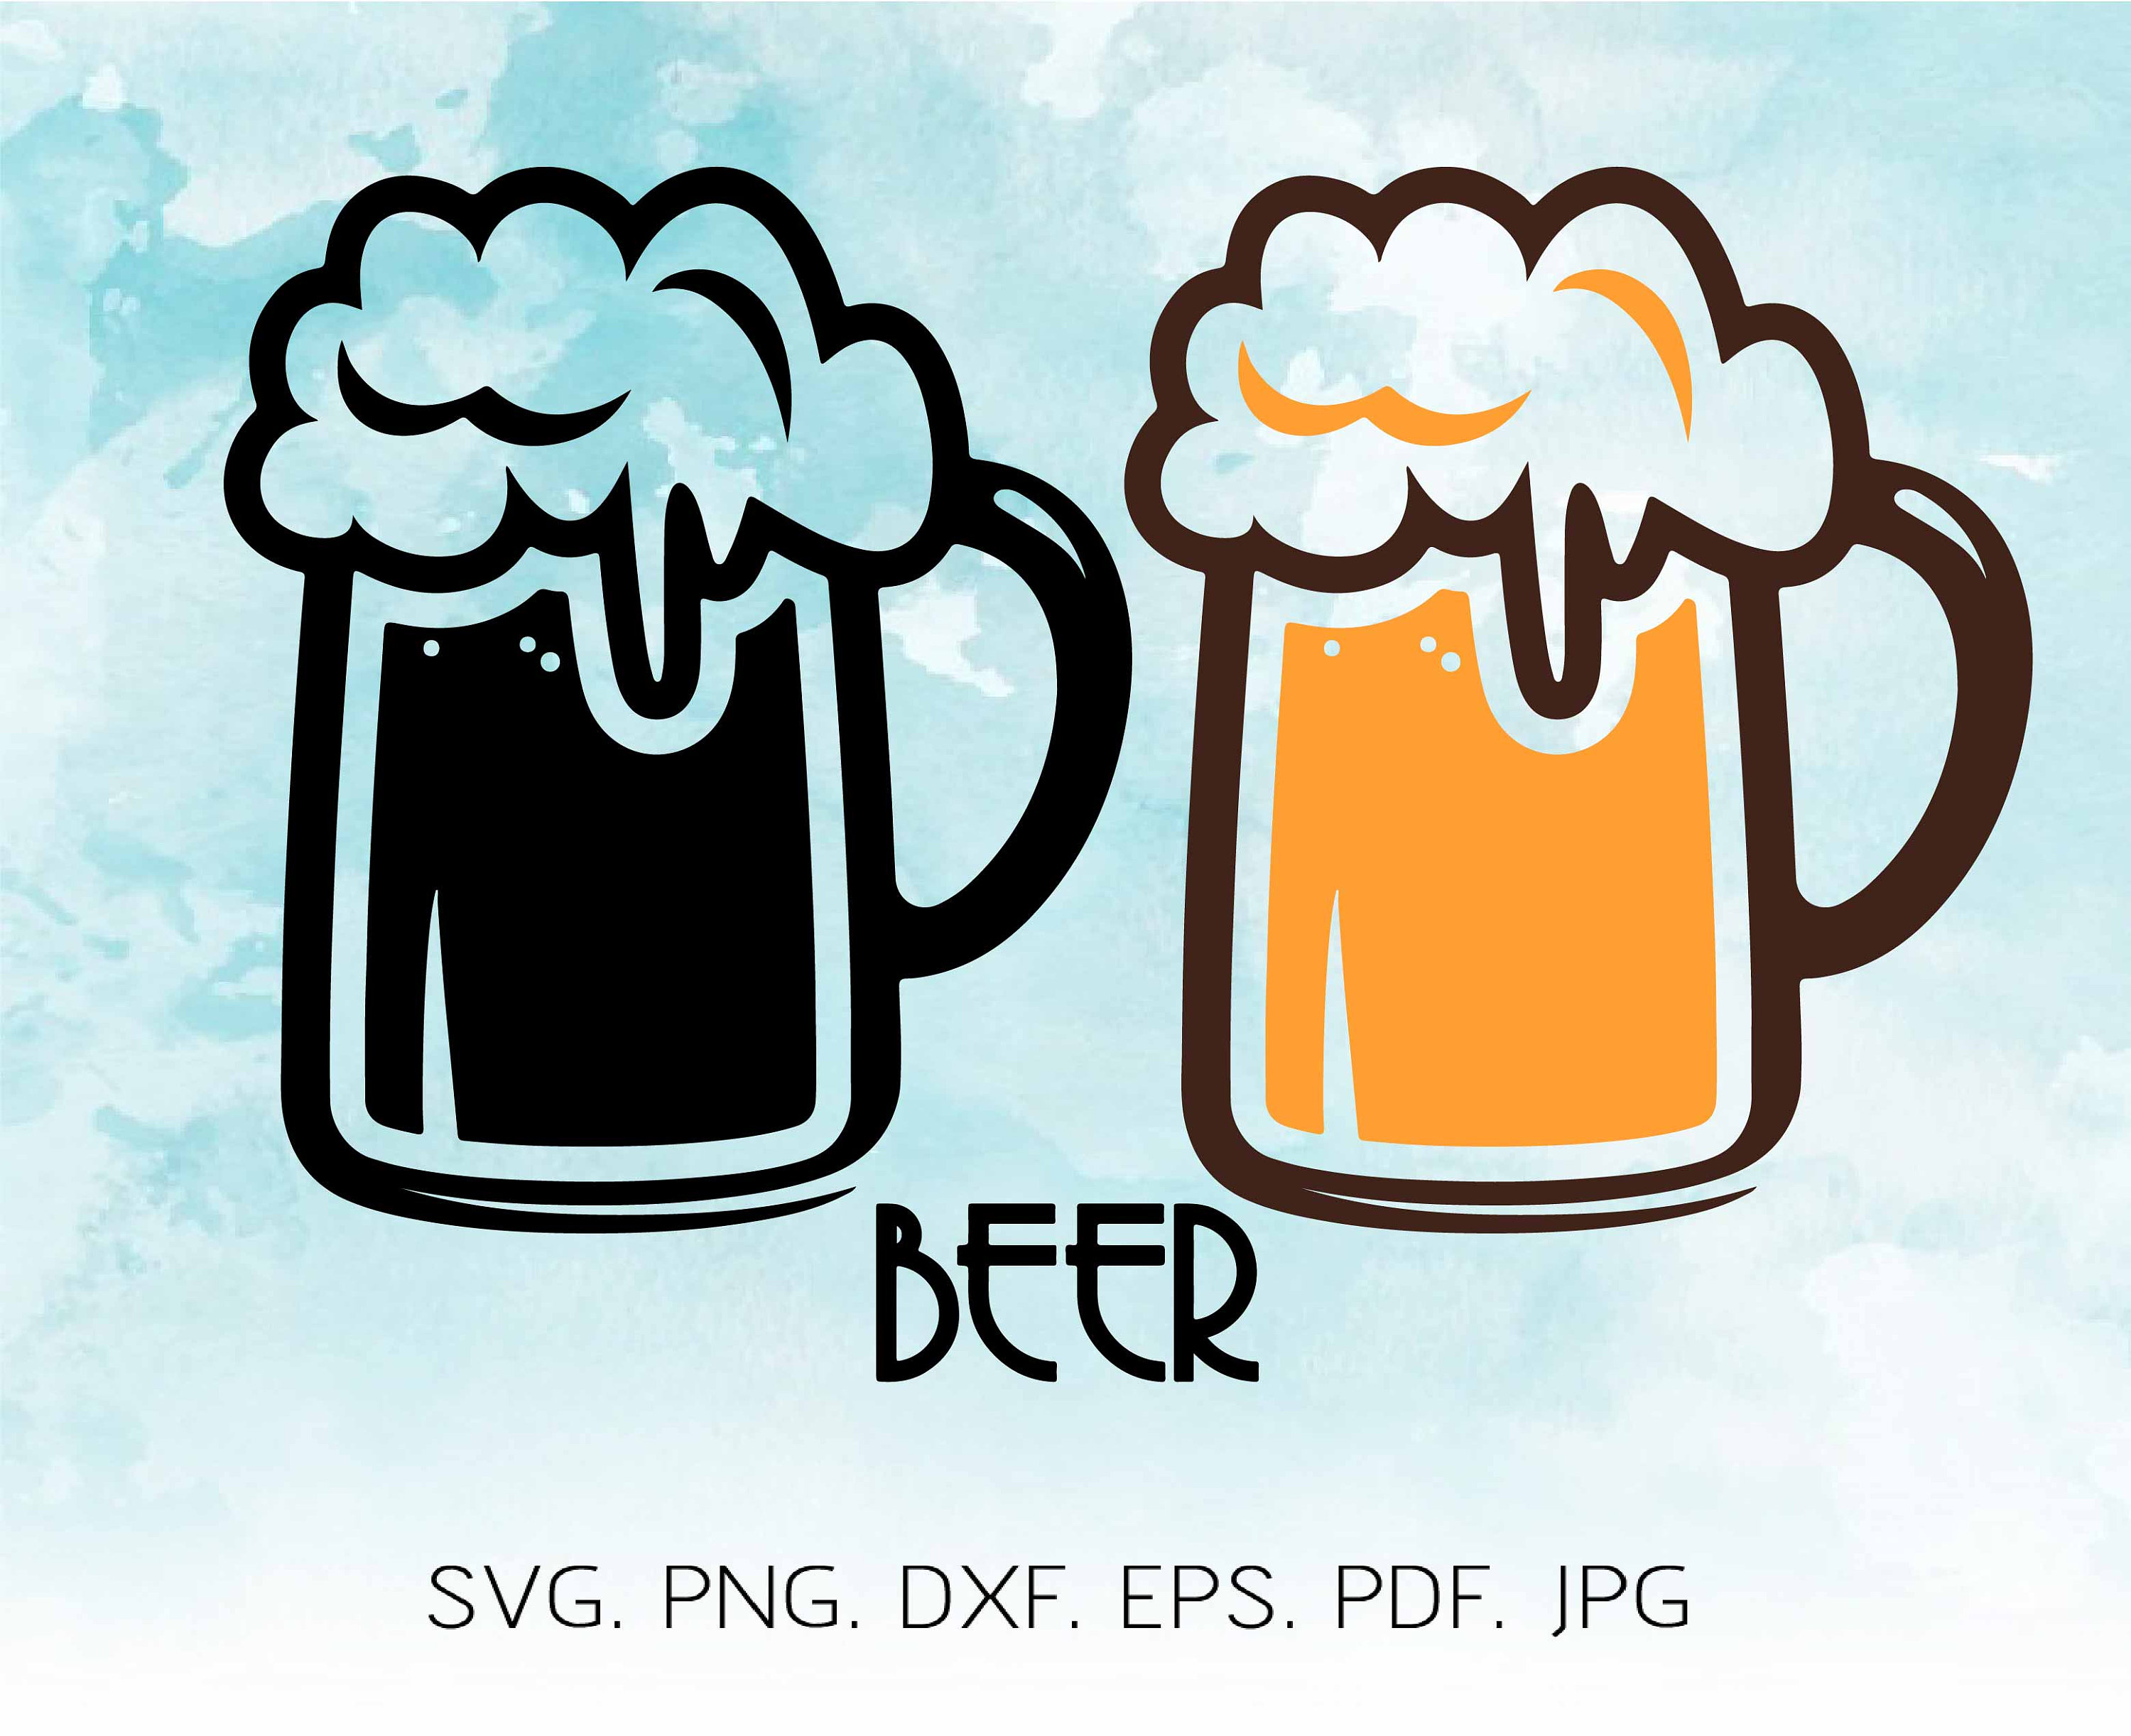 Cinco De Mayo SVG, Beer mug SVG, beer svg, beer glass svg, drink sv...